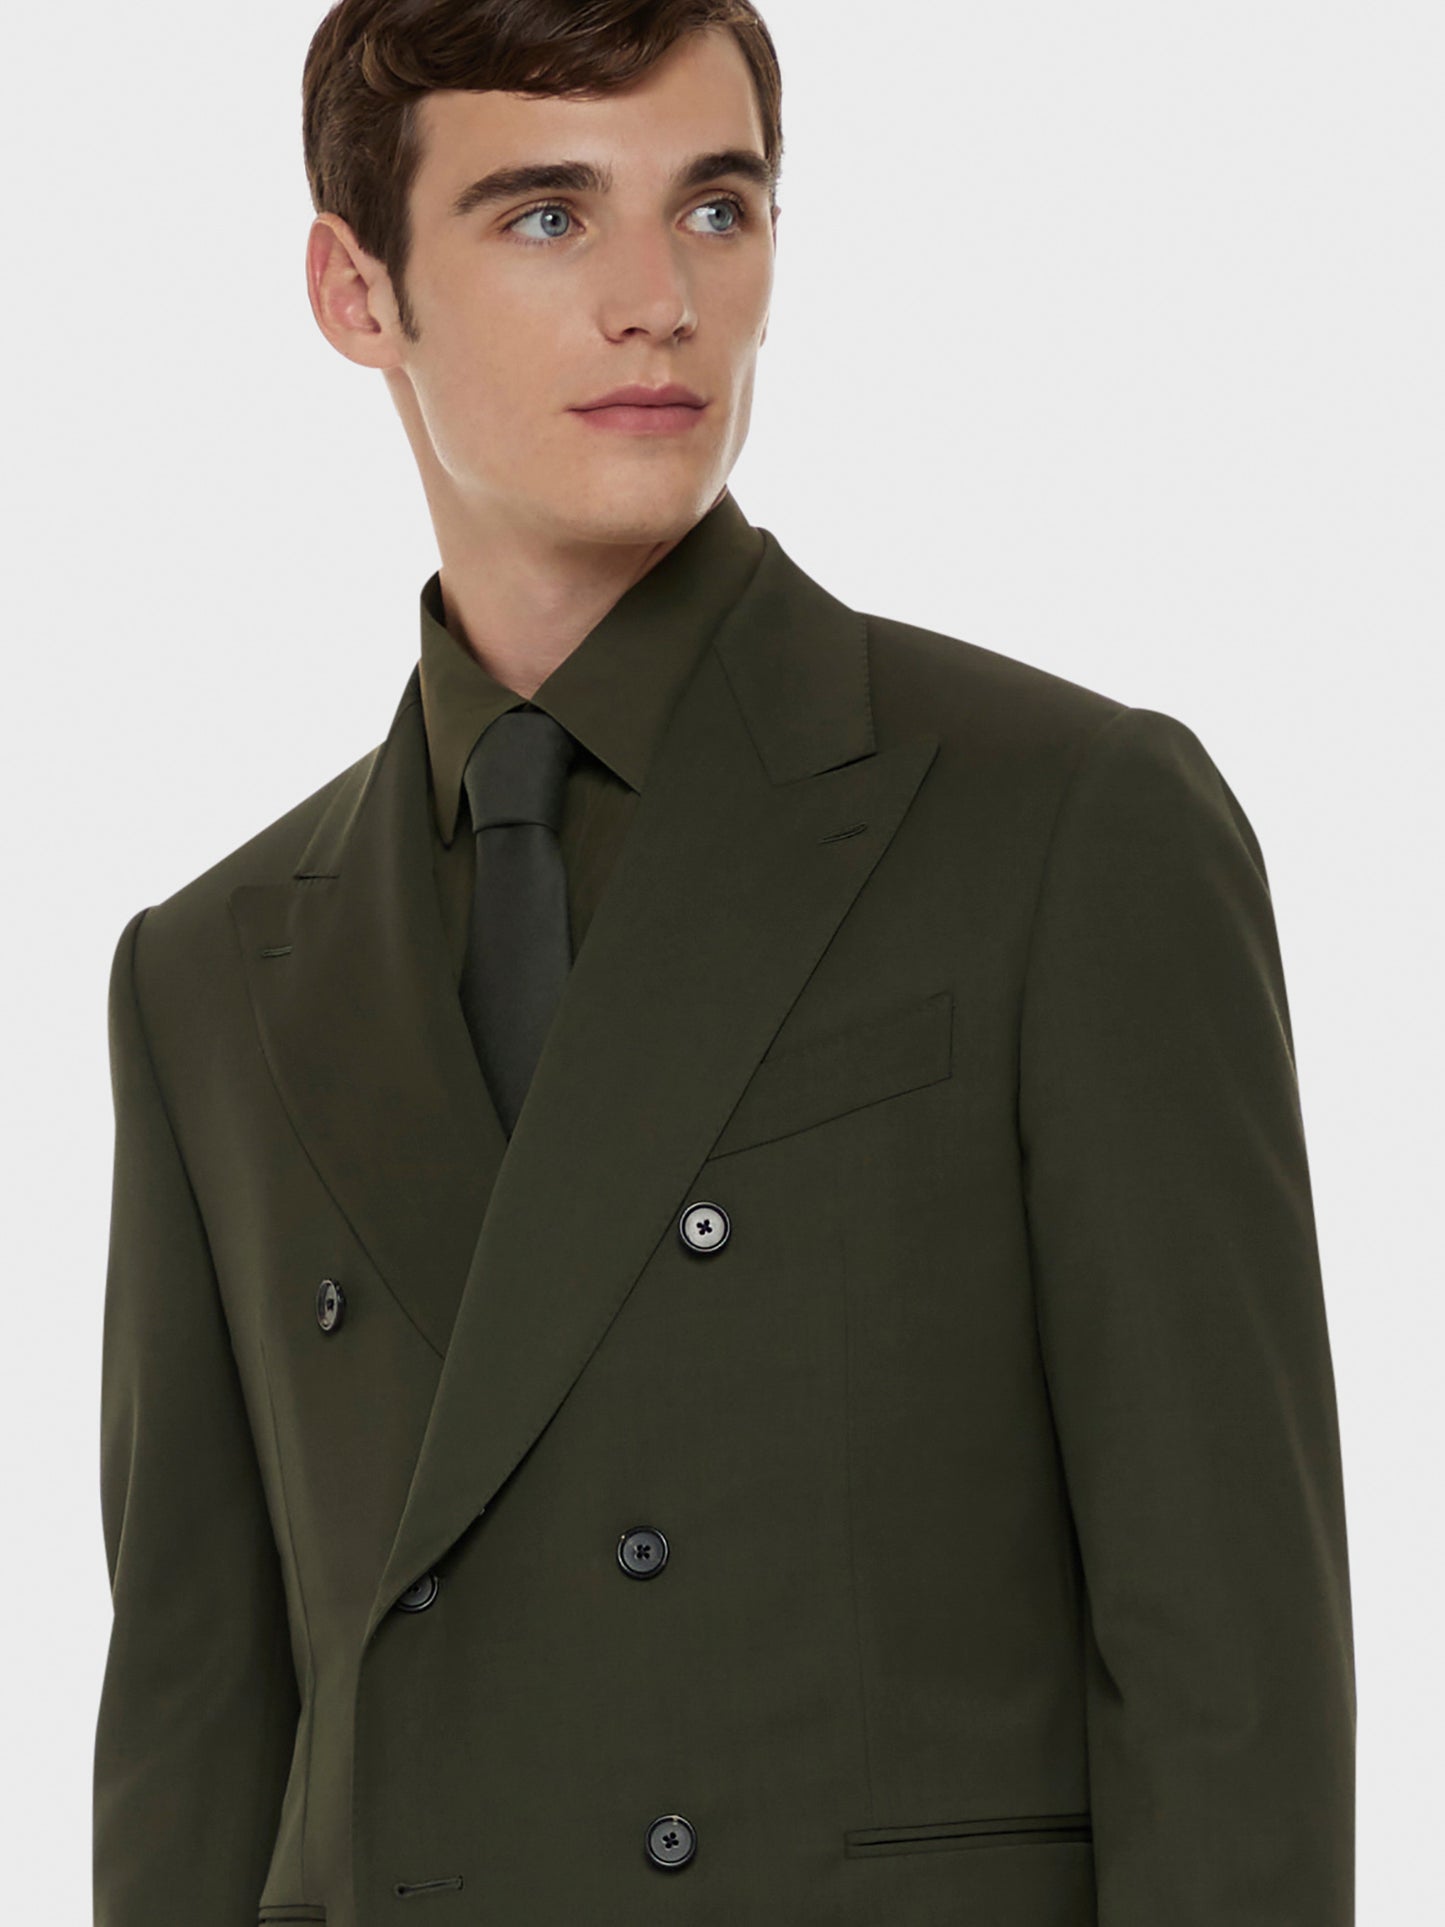 Caruso Menswear Abbigliamento Uomo Abito norma doppiopetto in lana tecnica verde drop 7R dettaglio giacca